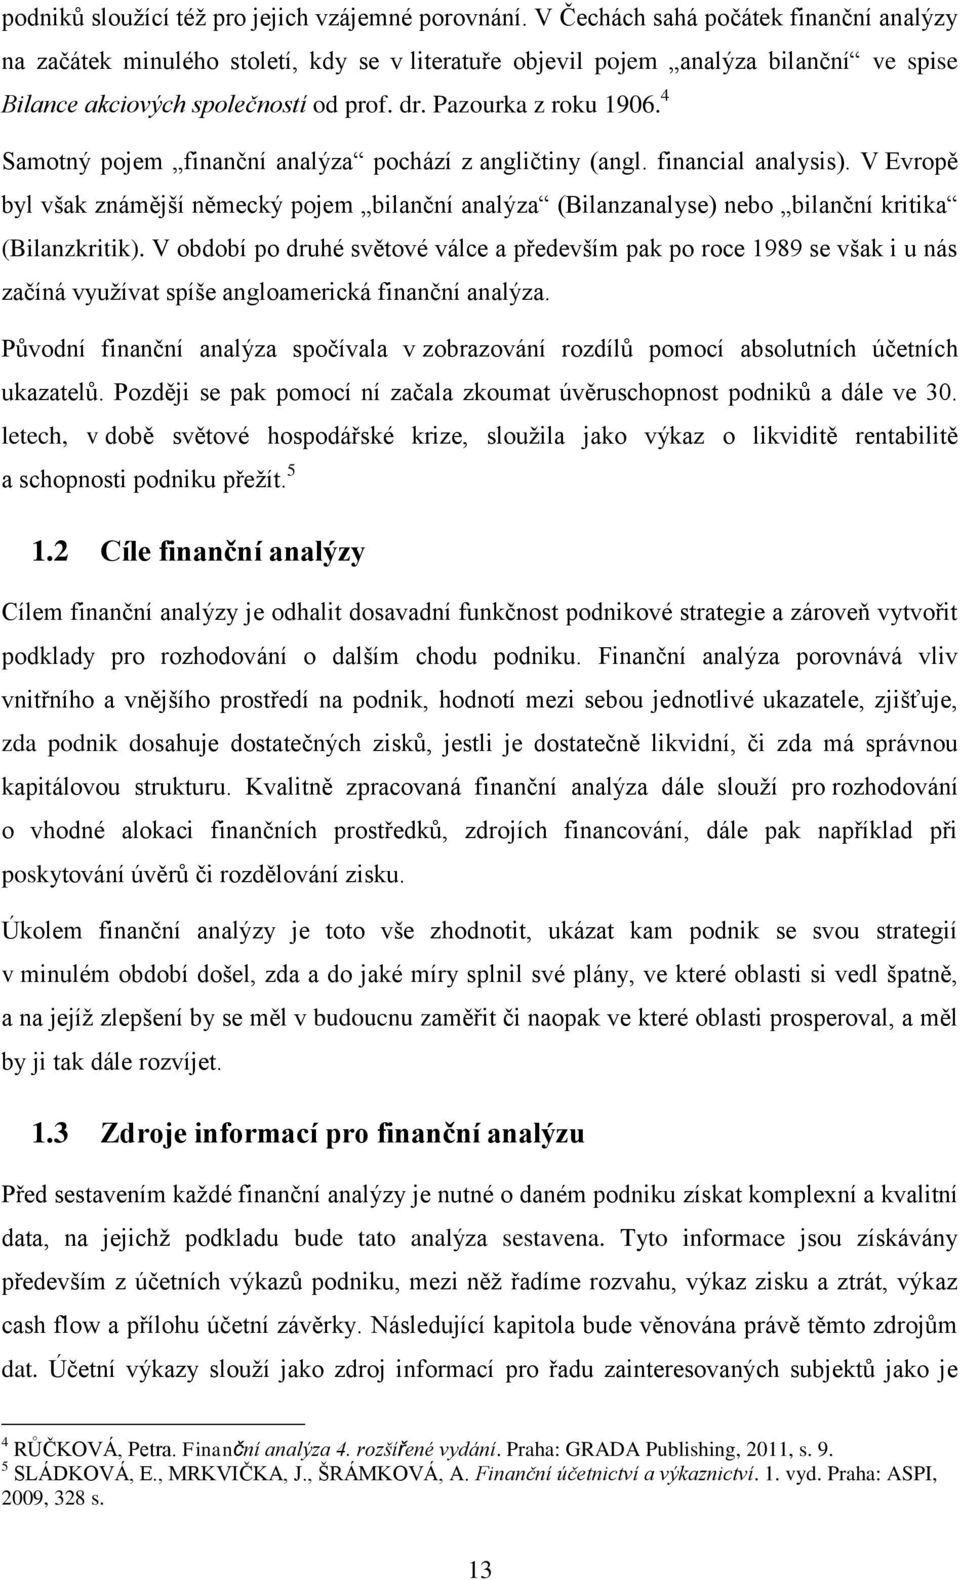 4 Samotný pojem finanční analýza pochází z angličtiny (angl. financial analysis). V Evropě byl však známější německý pojem bilanční analýza (Bilanzanalyse) nebo bilanční kritika (Bilanzkritik).